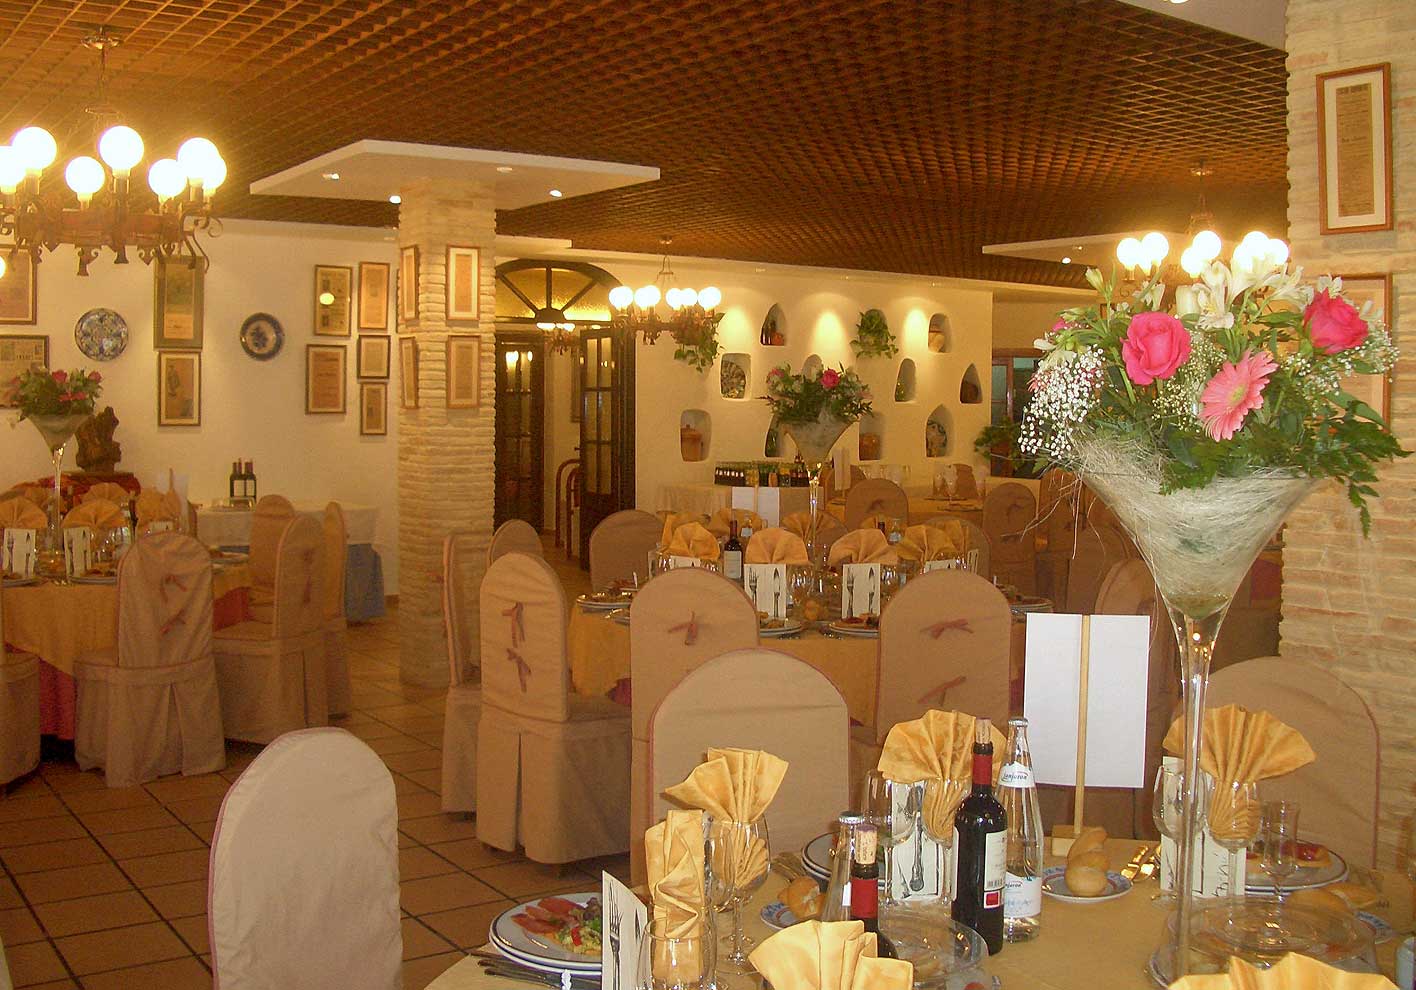 Private Dining Room 02 - Hotel Restaurante Terraza Carmona in Vera, Almeria